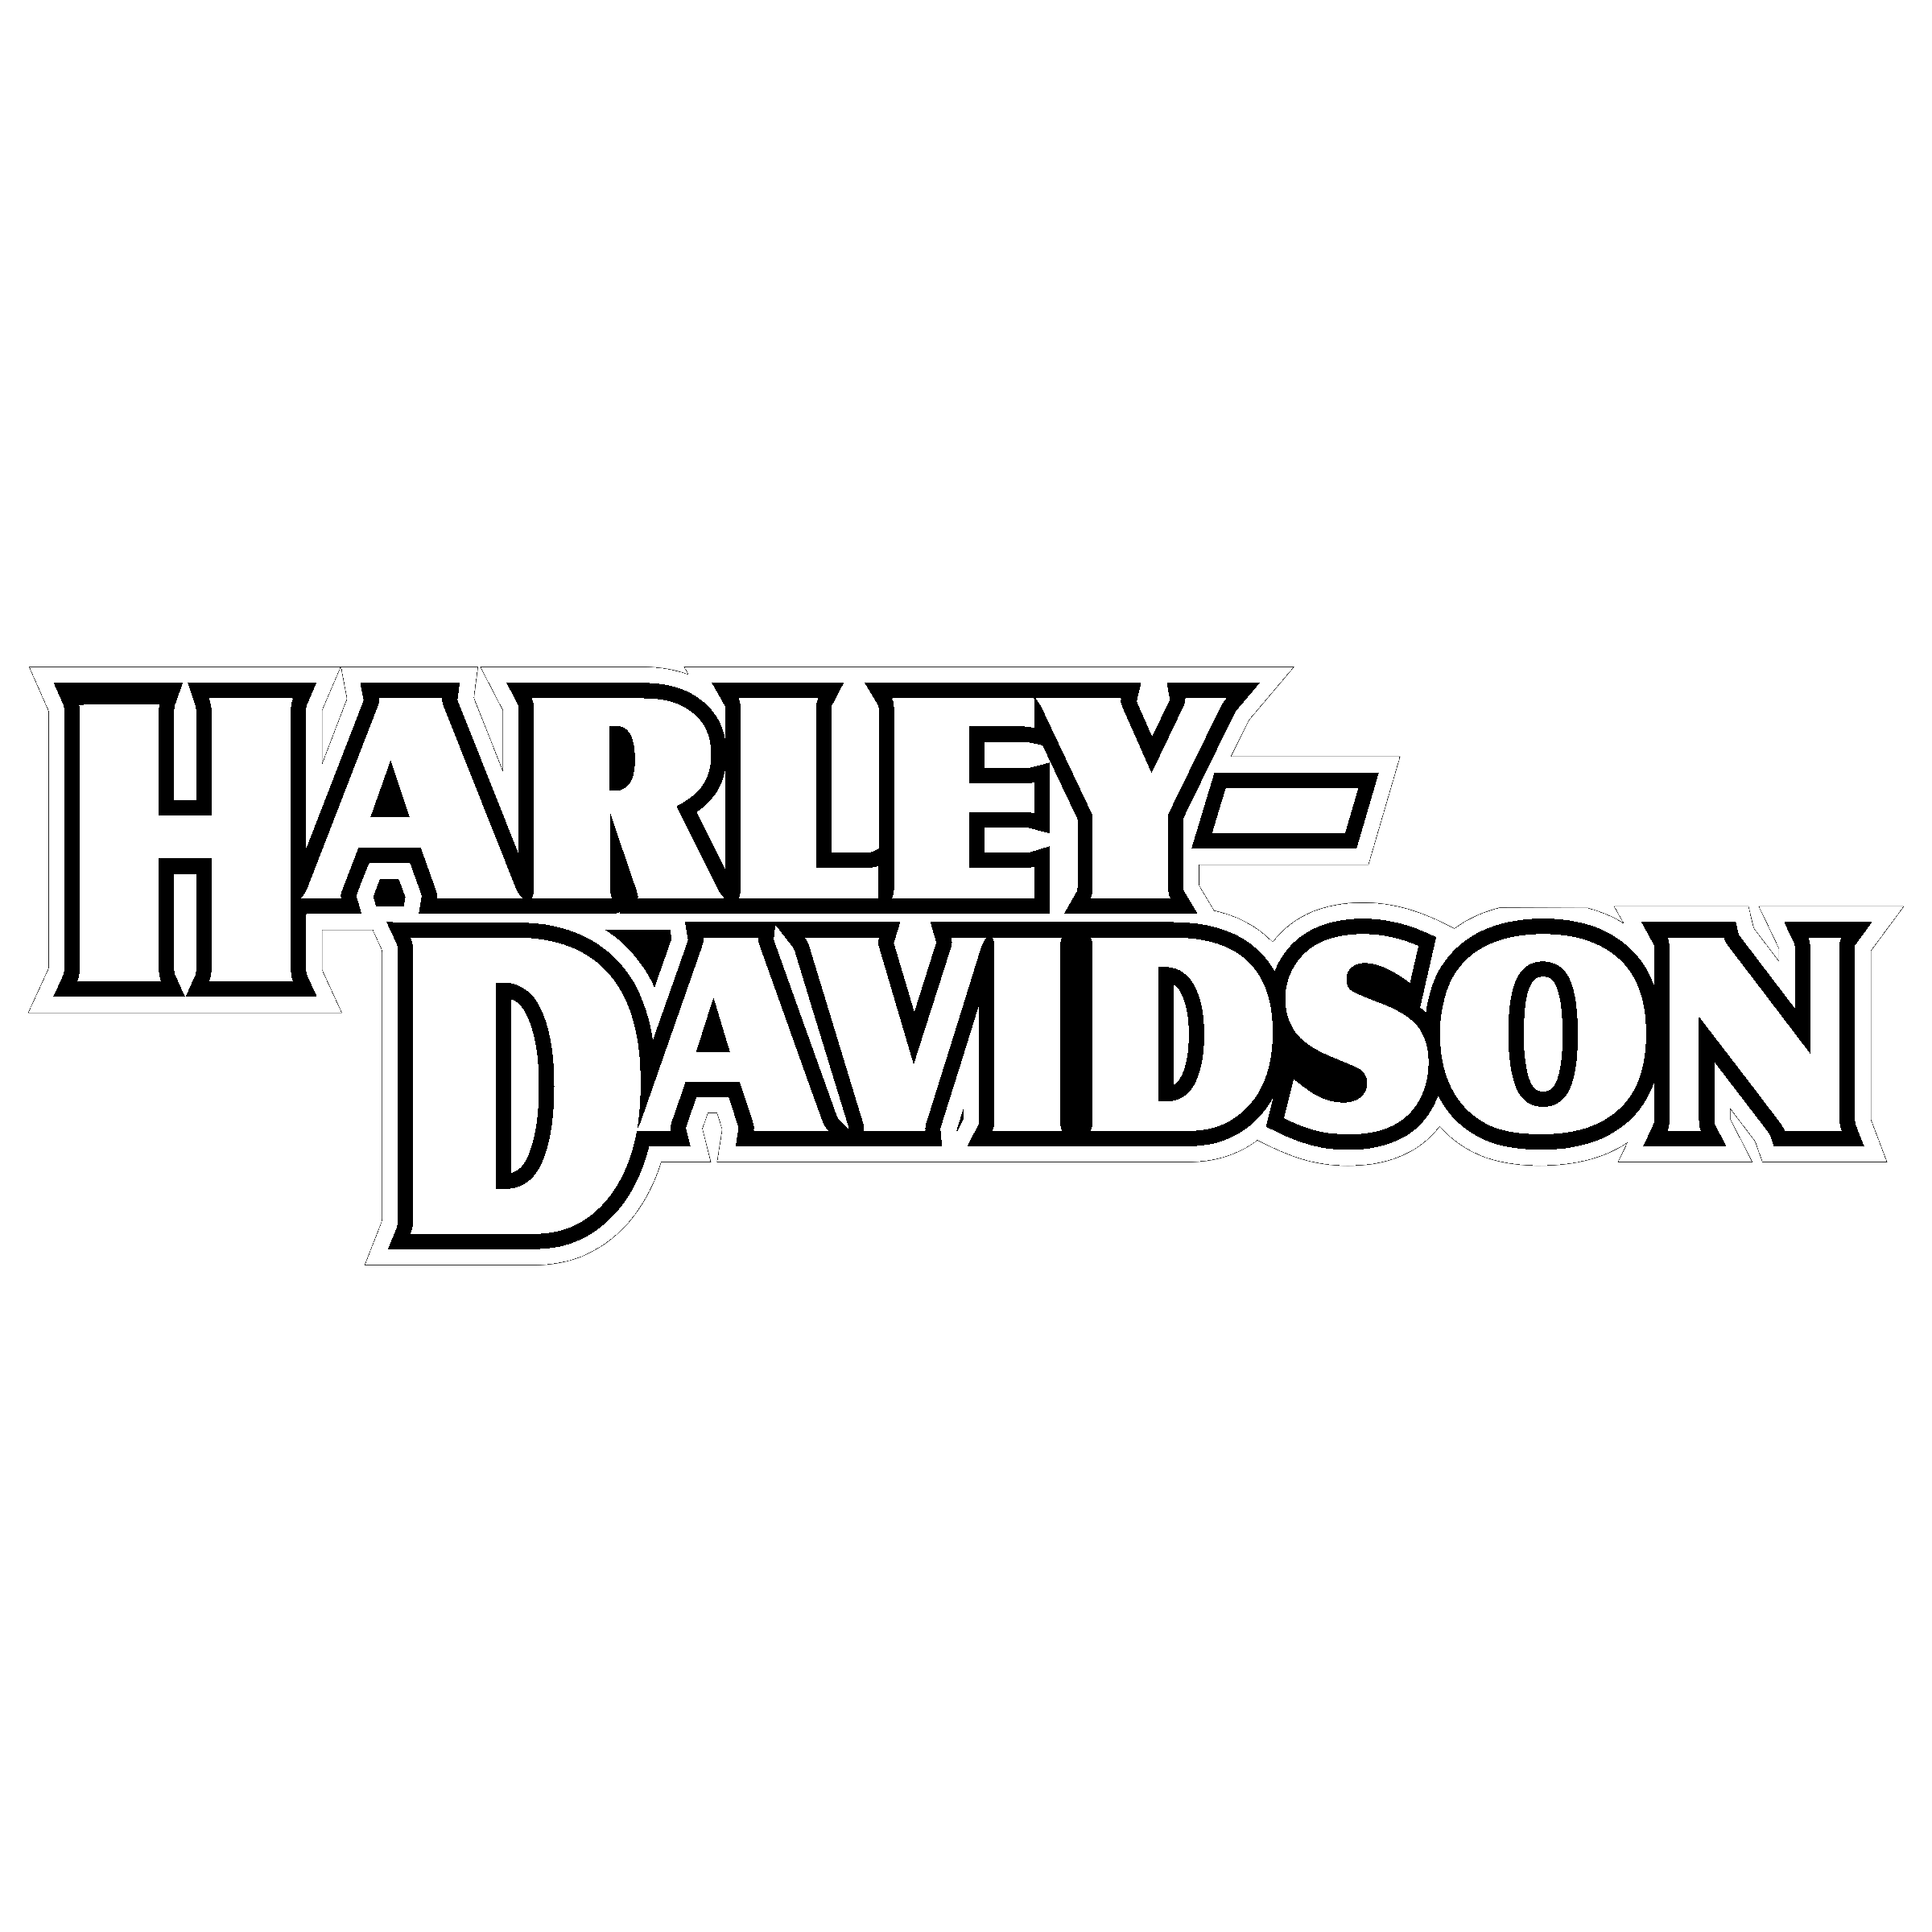 Black and White Harley-Davidson Logo - Harley Davidson Logo PNG Transparent & SVG Vector - Freebie Supply